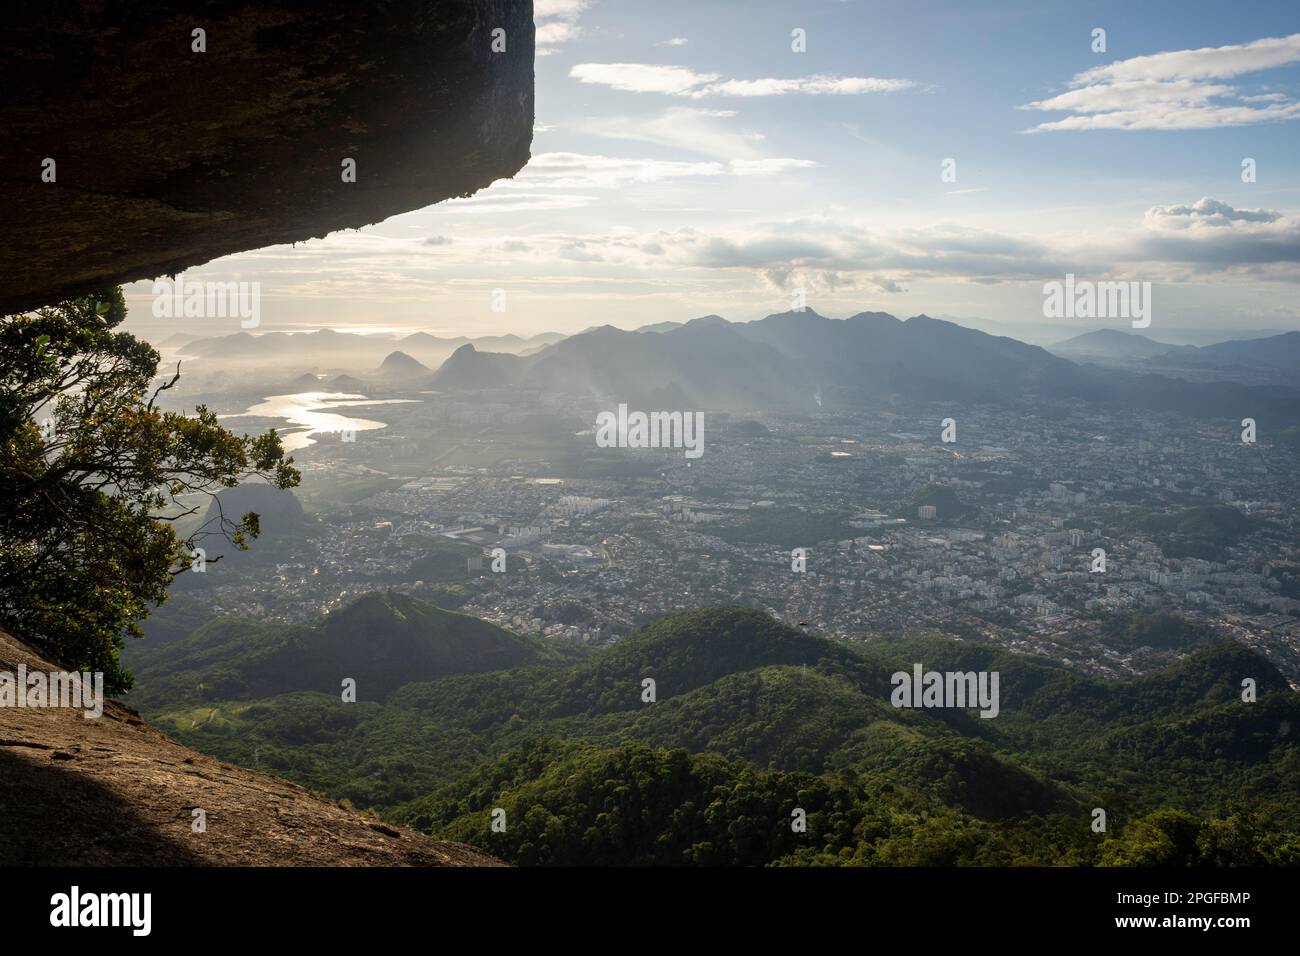 Belle vue sur les montagnes et paysage de forêt tropicale de l'atlantique Banque D'Images